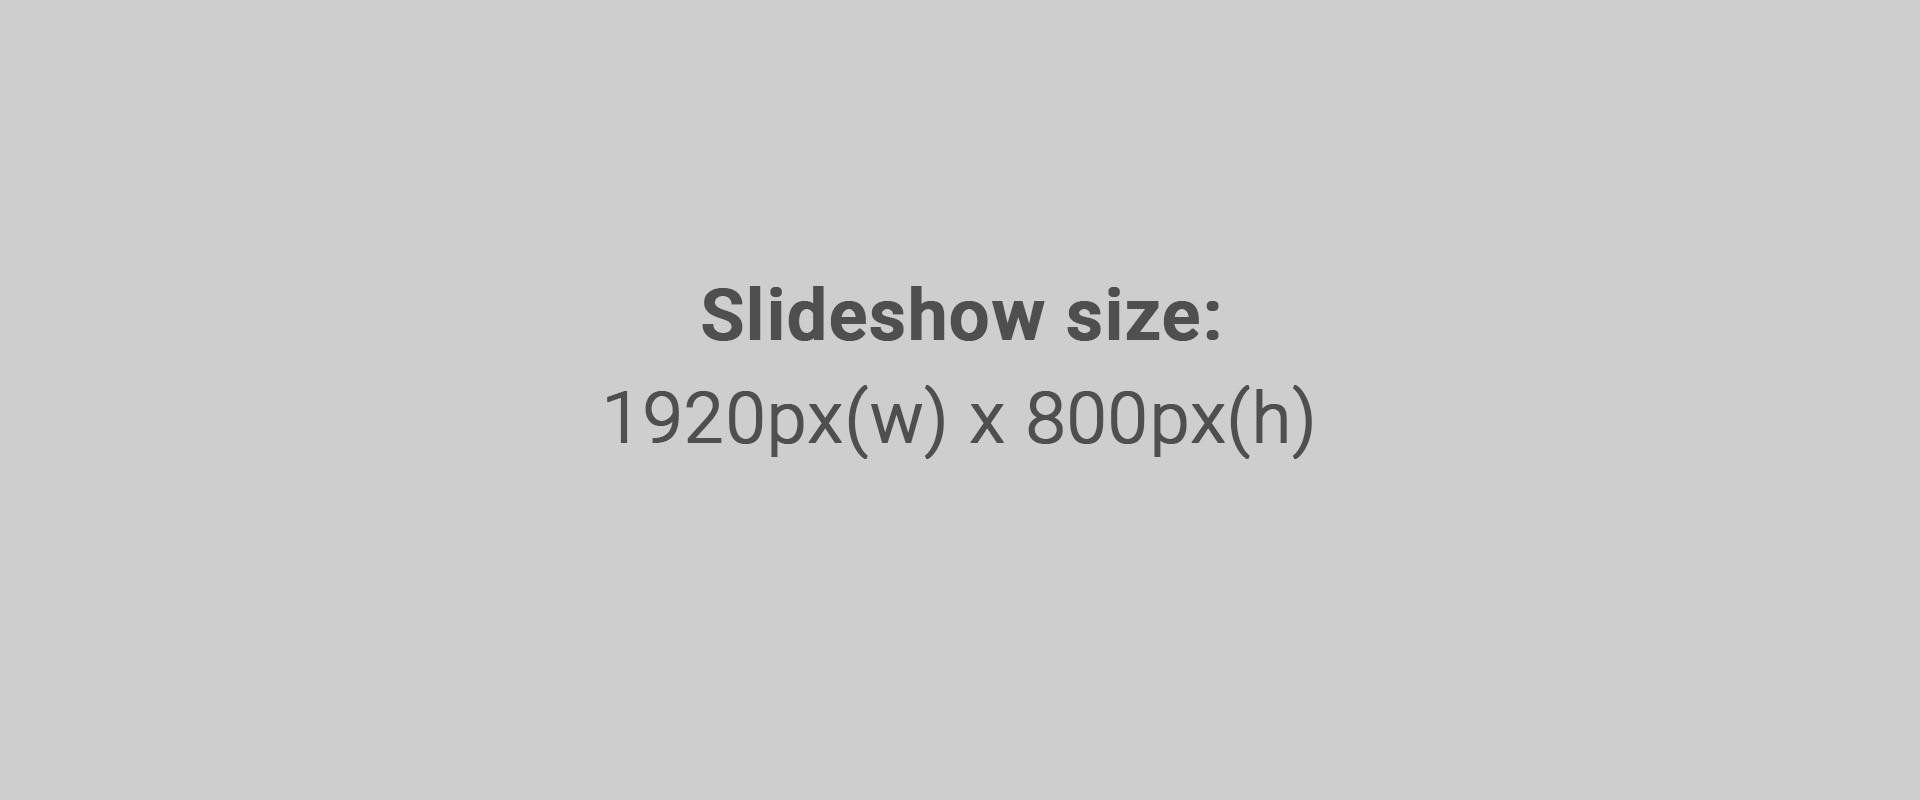 Slideshow size: 1920px(w) x 1200px(h)